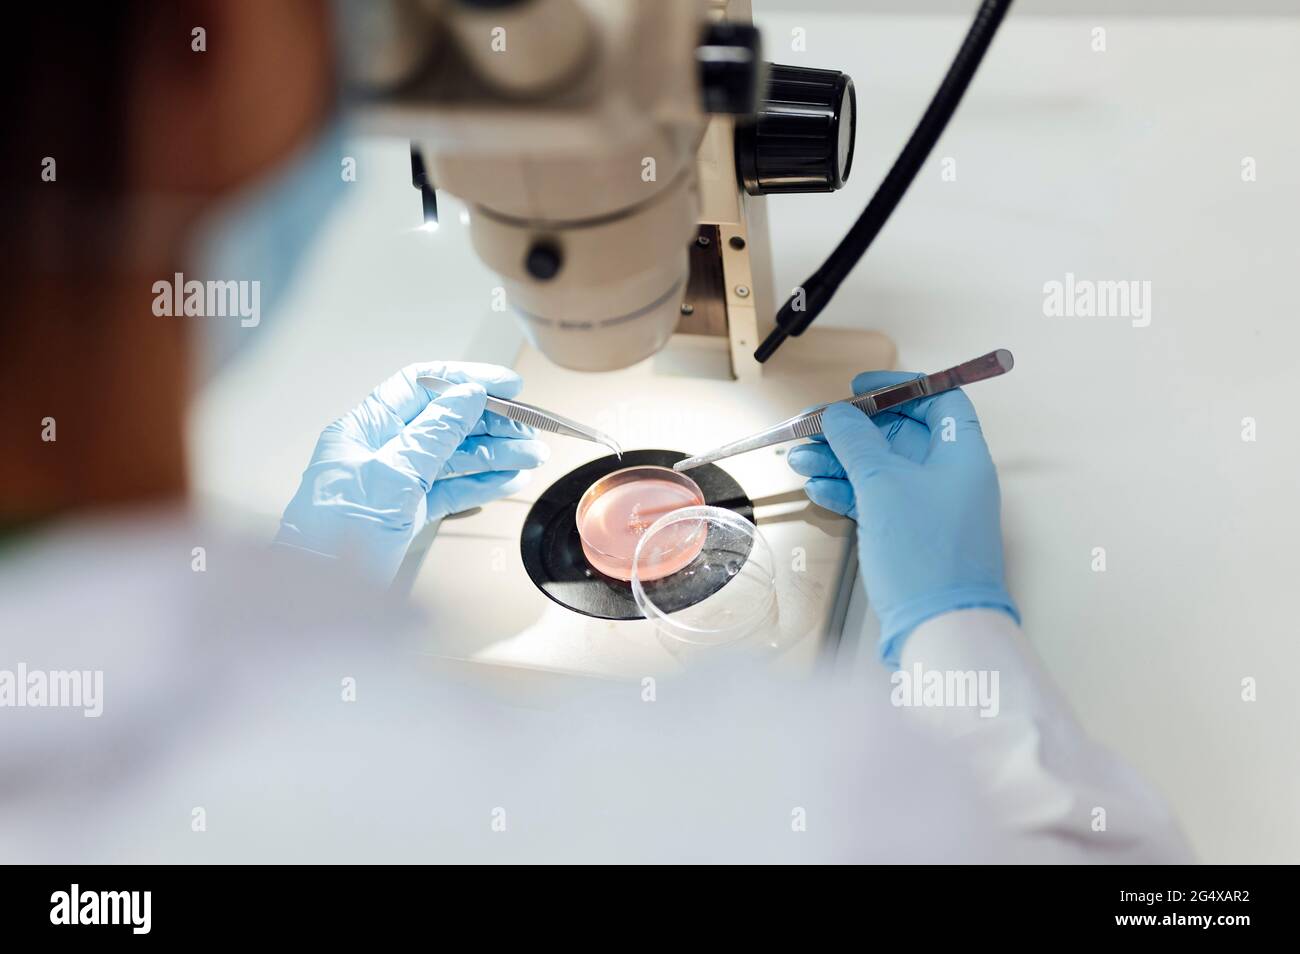 Experte médicale féminine mature utilisant des pinces à épiler tout en analysant des échantillons médicaux au microscope en laboratoire Banque D'Images